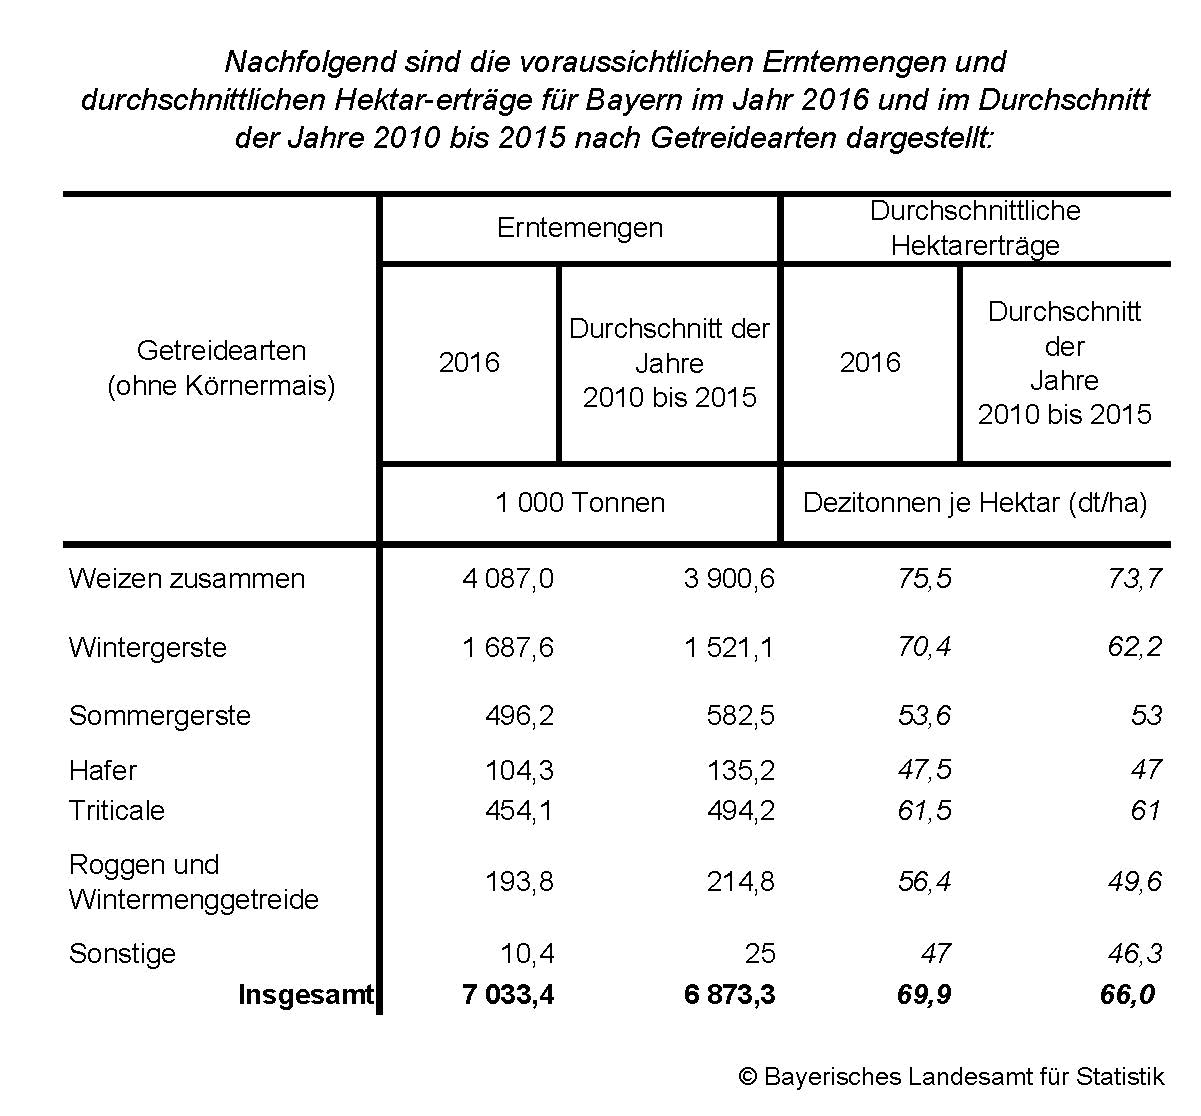 Nachfolgend sind die voraussichtlichen Erntemengen und durchschnittlichen Hektarerträge für Bayern im Jahr 2016 und im Durchschnitt der Jahre 2010 bis 2015 nach Getreidearten dargestellt: